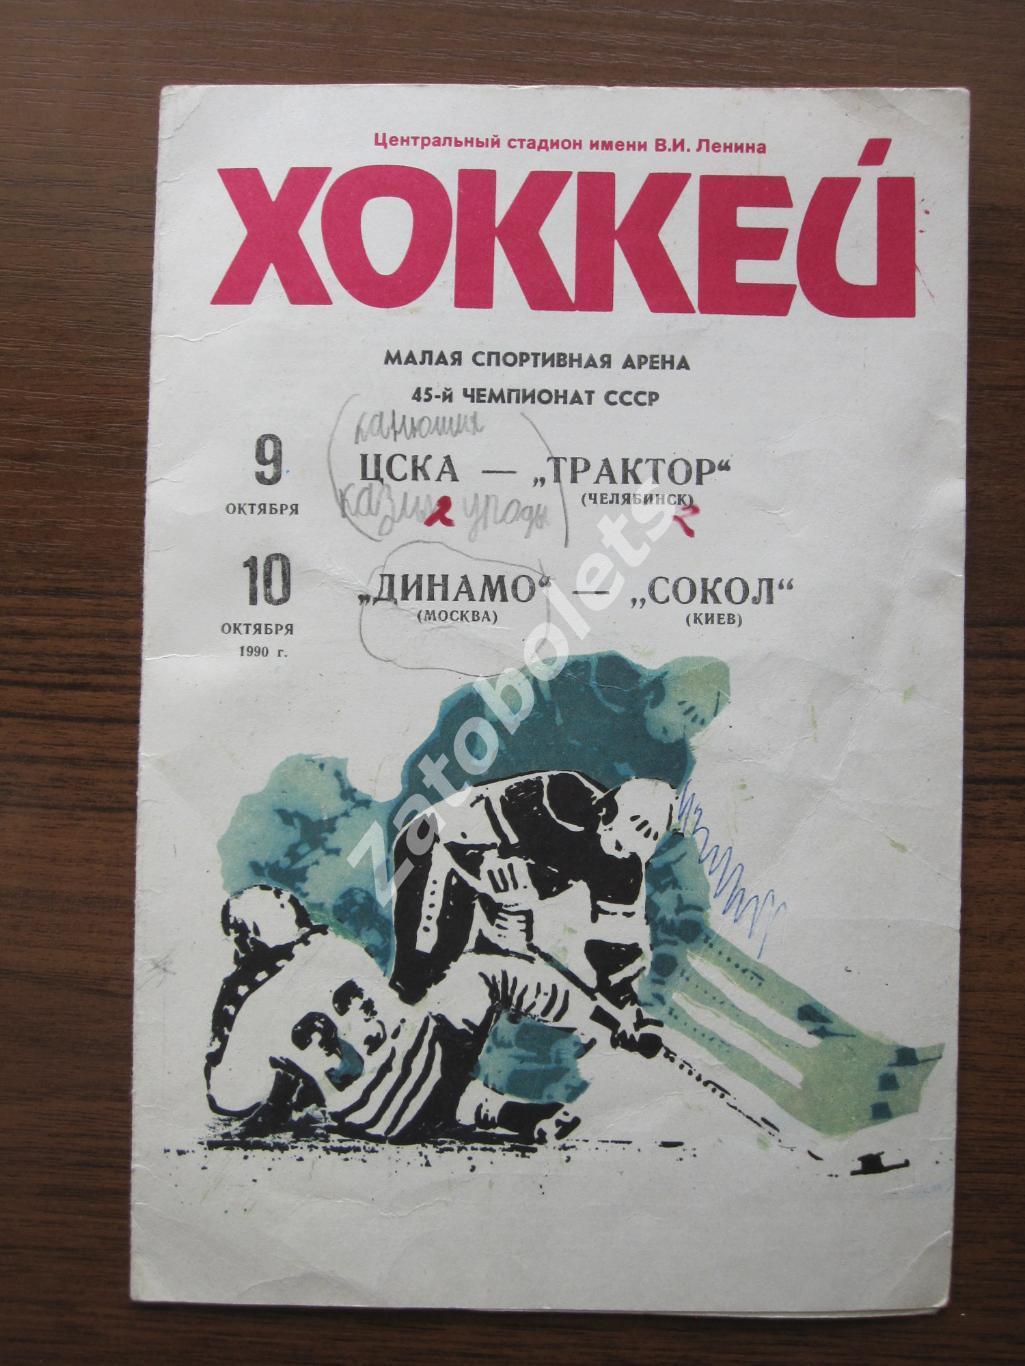 ЦСКА - Трактор Челябинск / Динамо-Сокол 09-10.10.1990